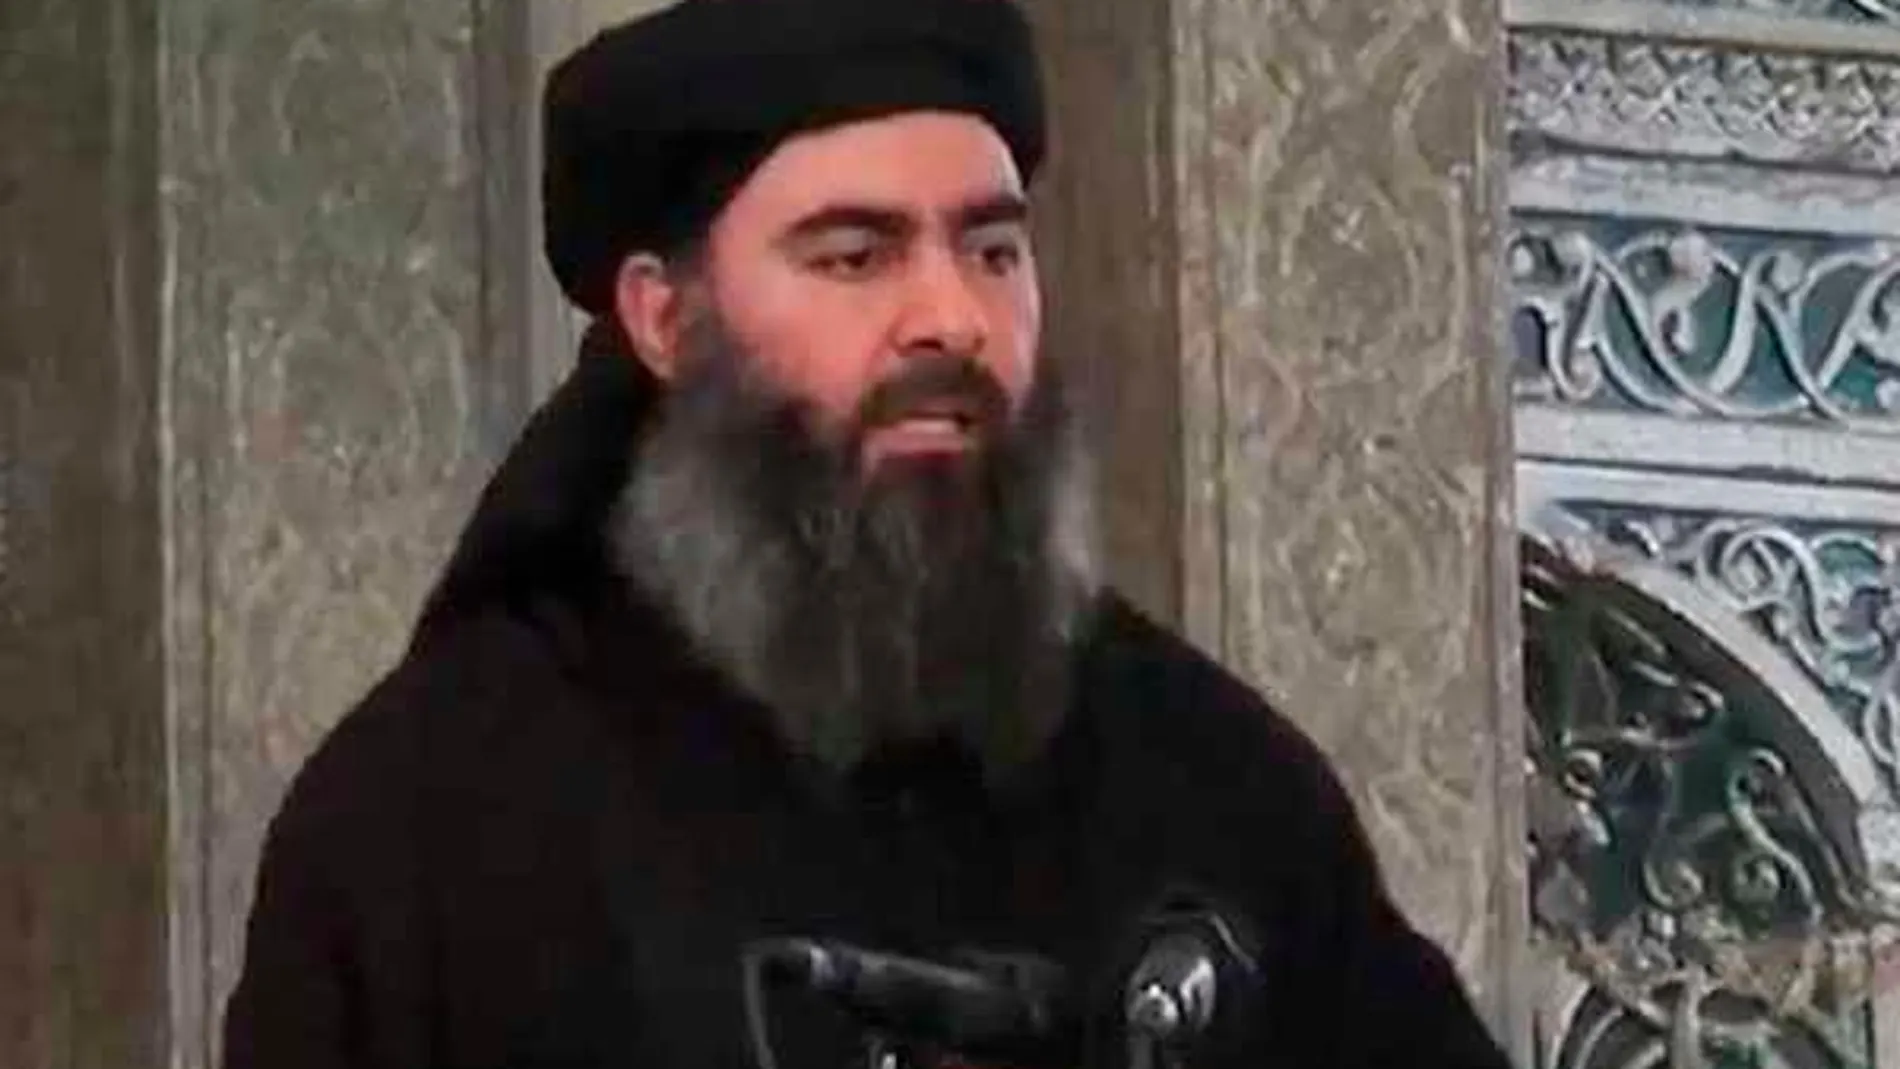 El juzgado fue un colabiorador indirecto de Abu Bark Bagdhadi, primer califa y líder de Daesh